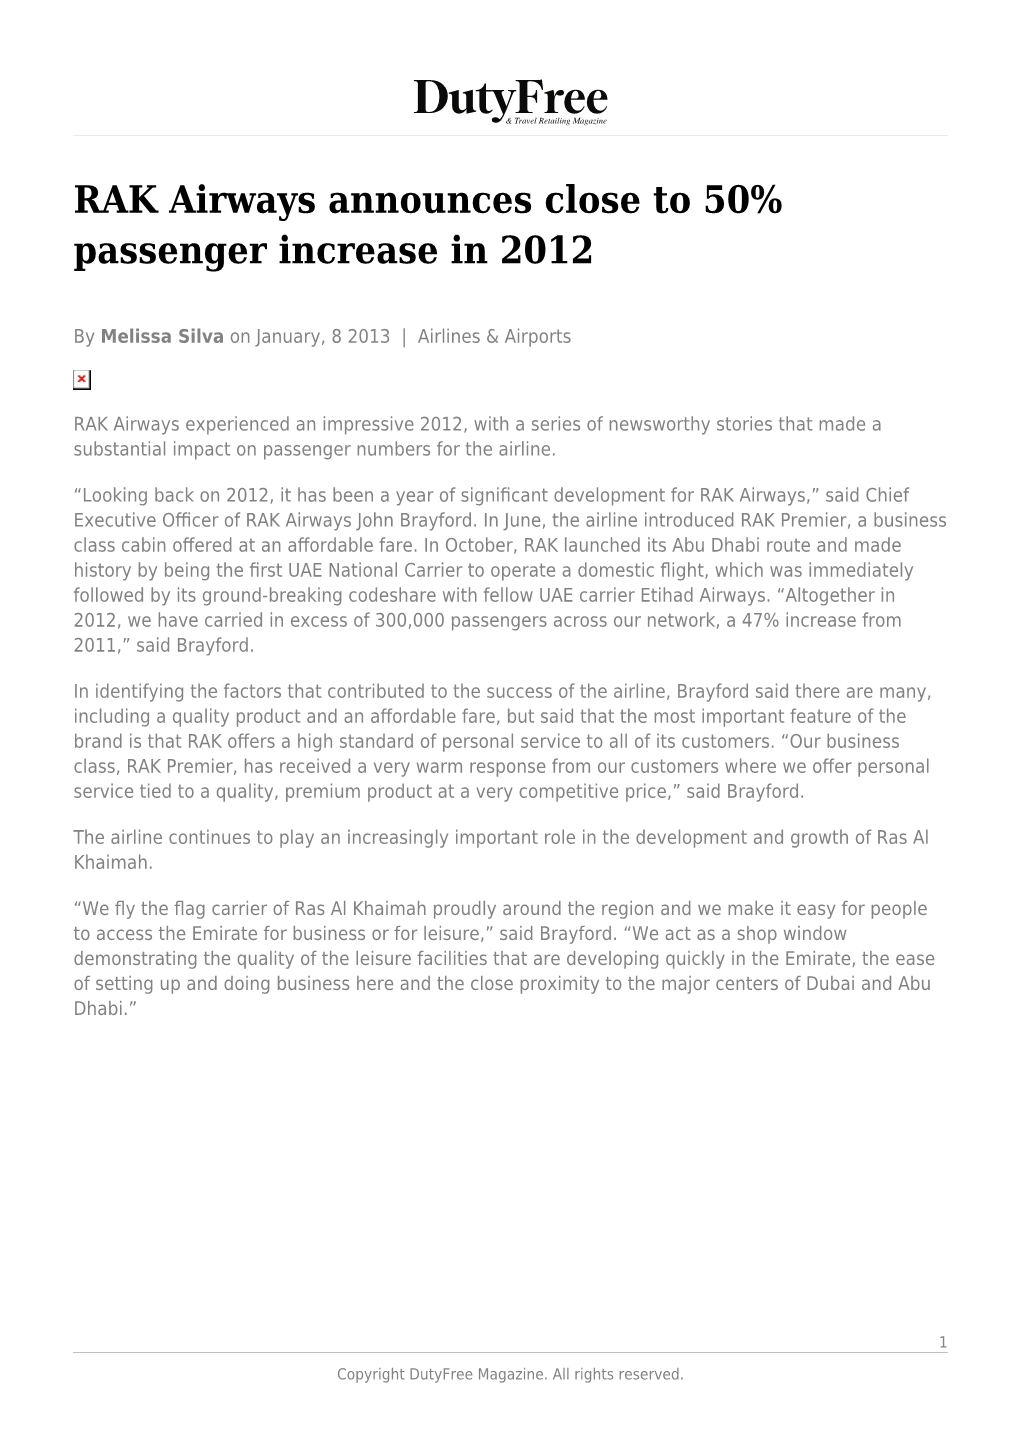 RAK Airways Announces Close to 50% Passenger Increase in 2012